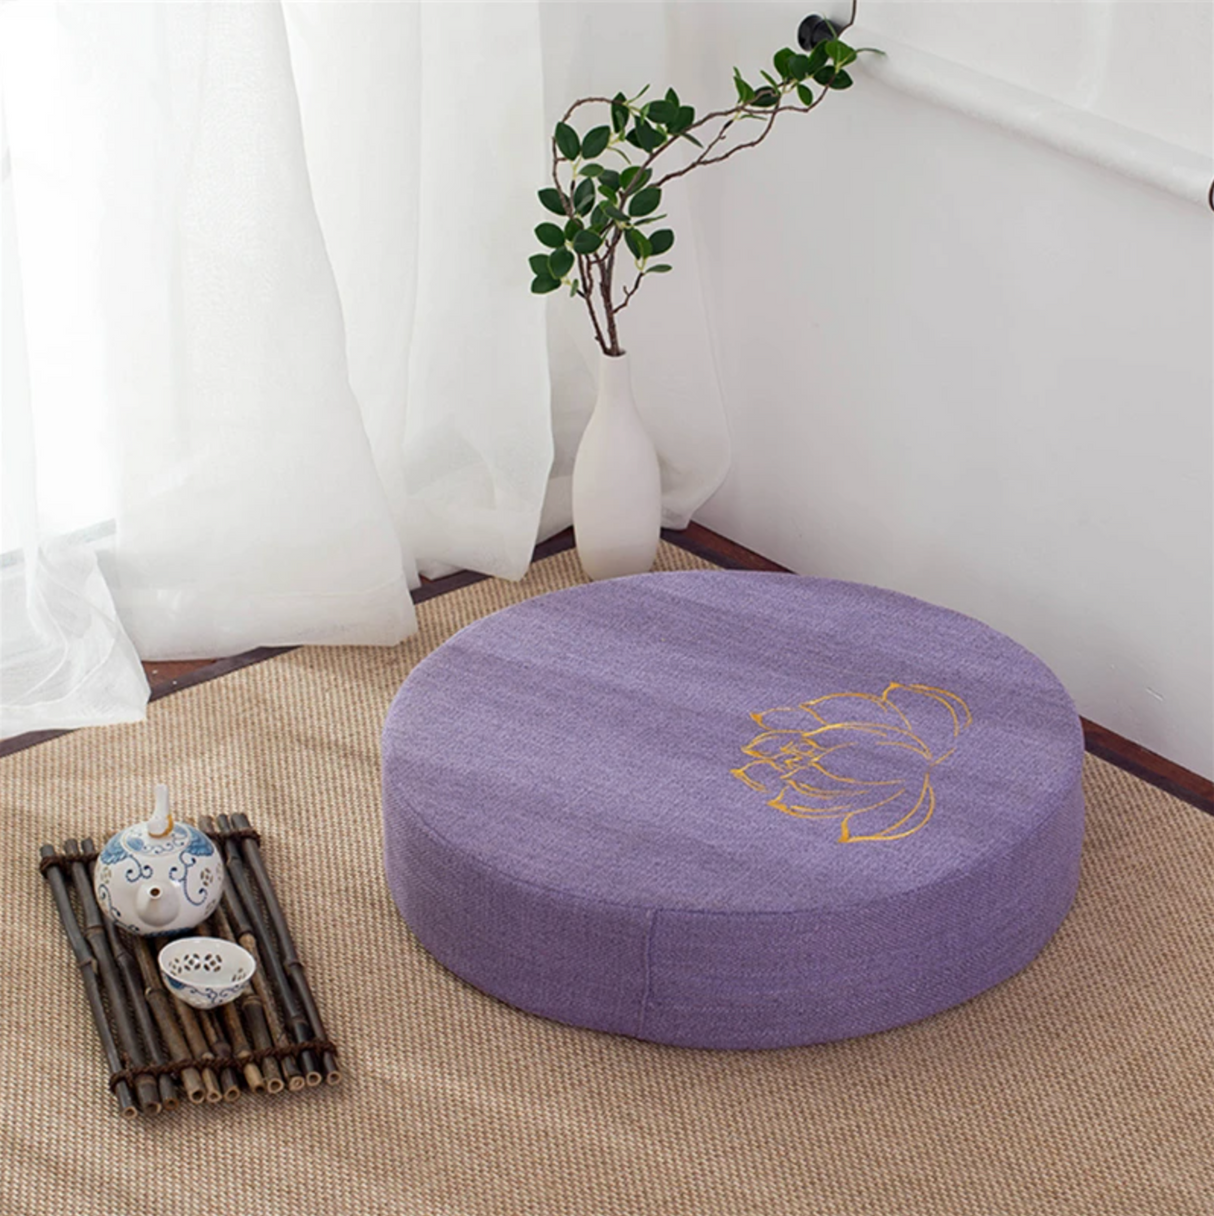 Japanese lotus flower cushion